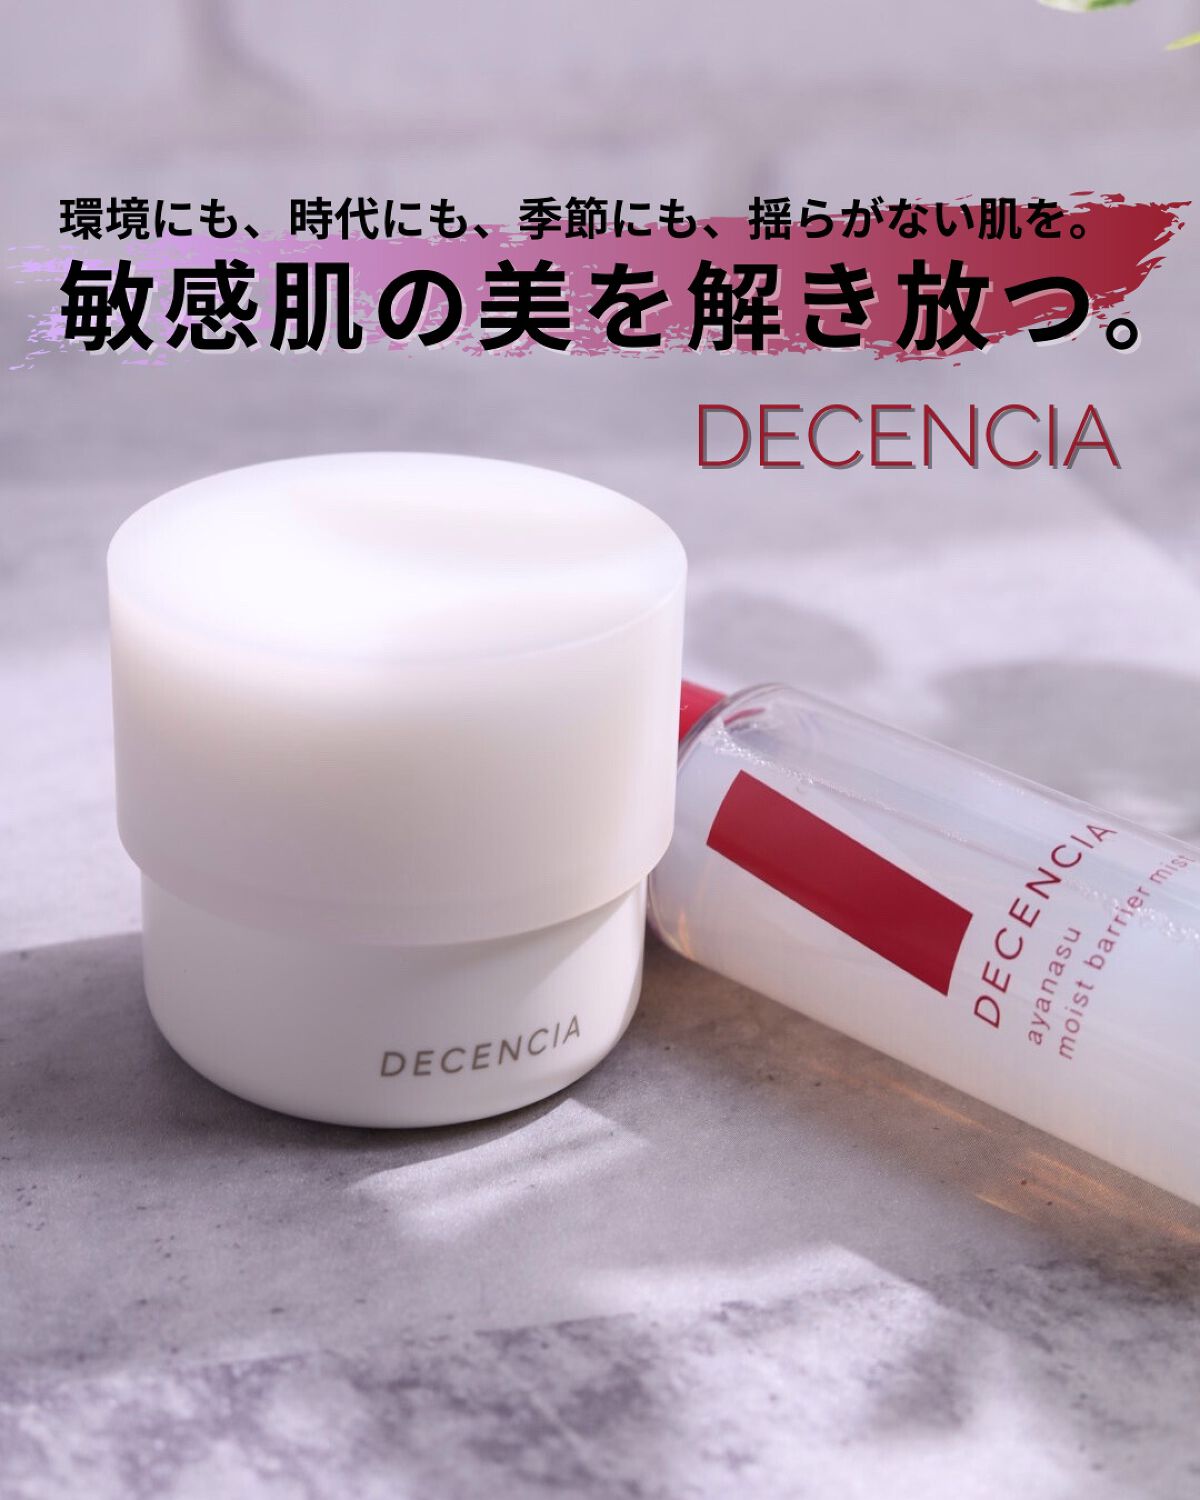 DECENCIAのスキンケア・基礎化粧品 アヤナス モイストバリアミスト